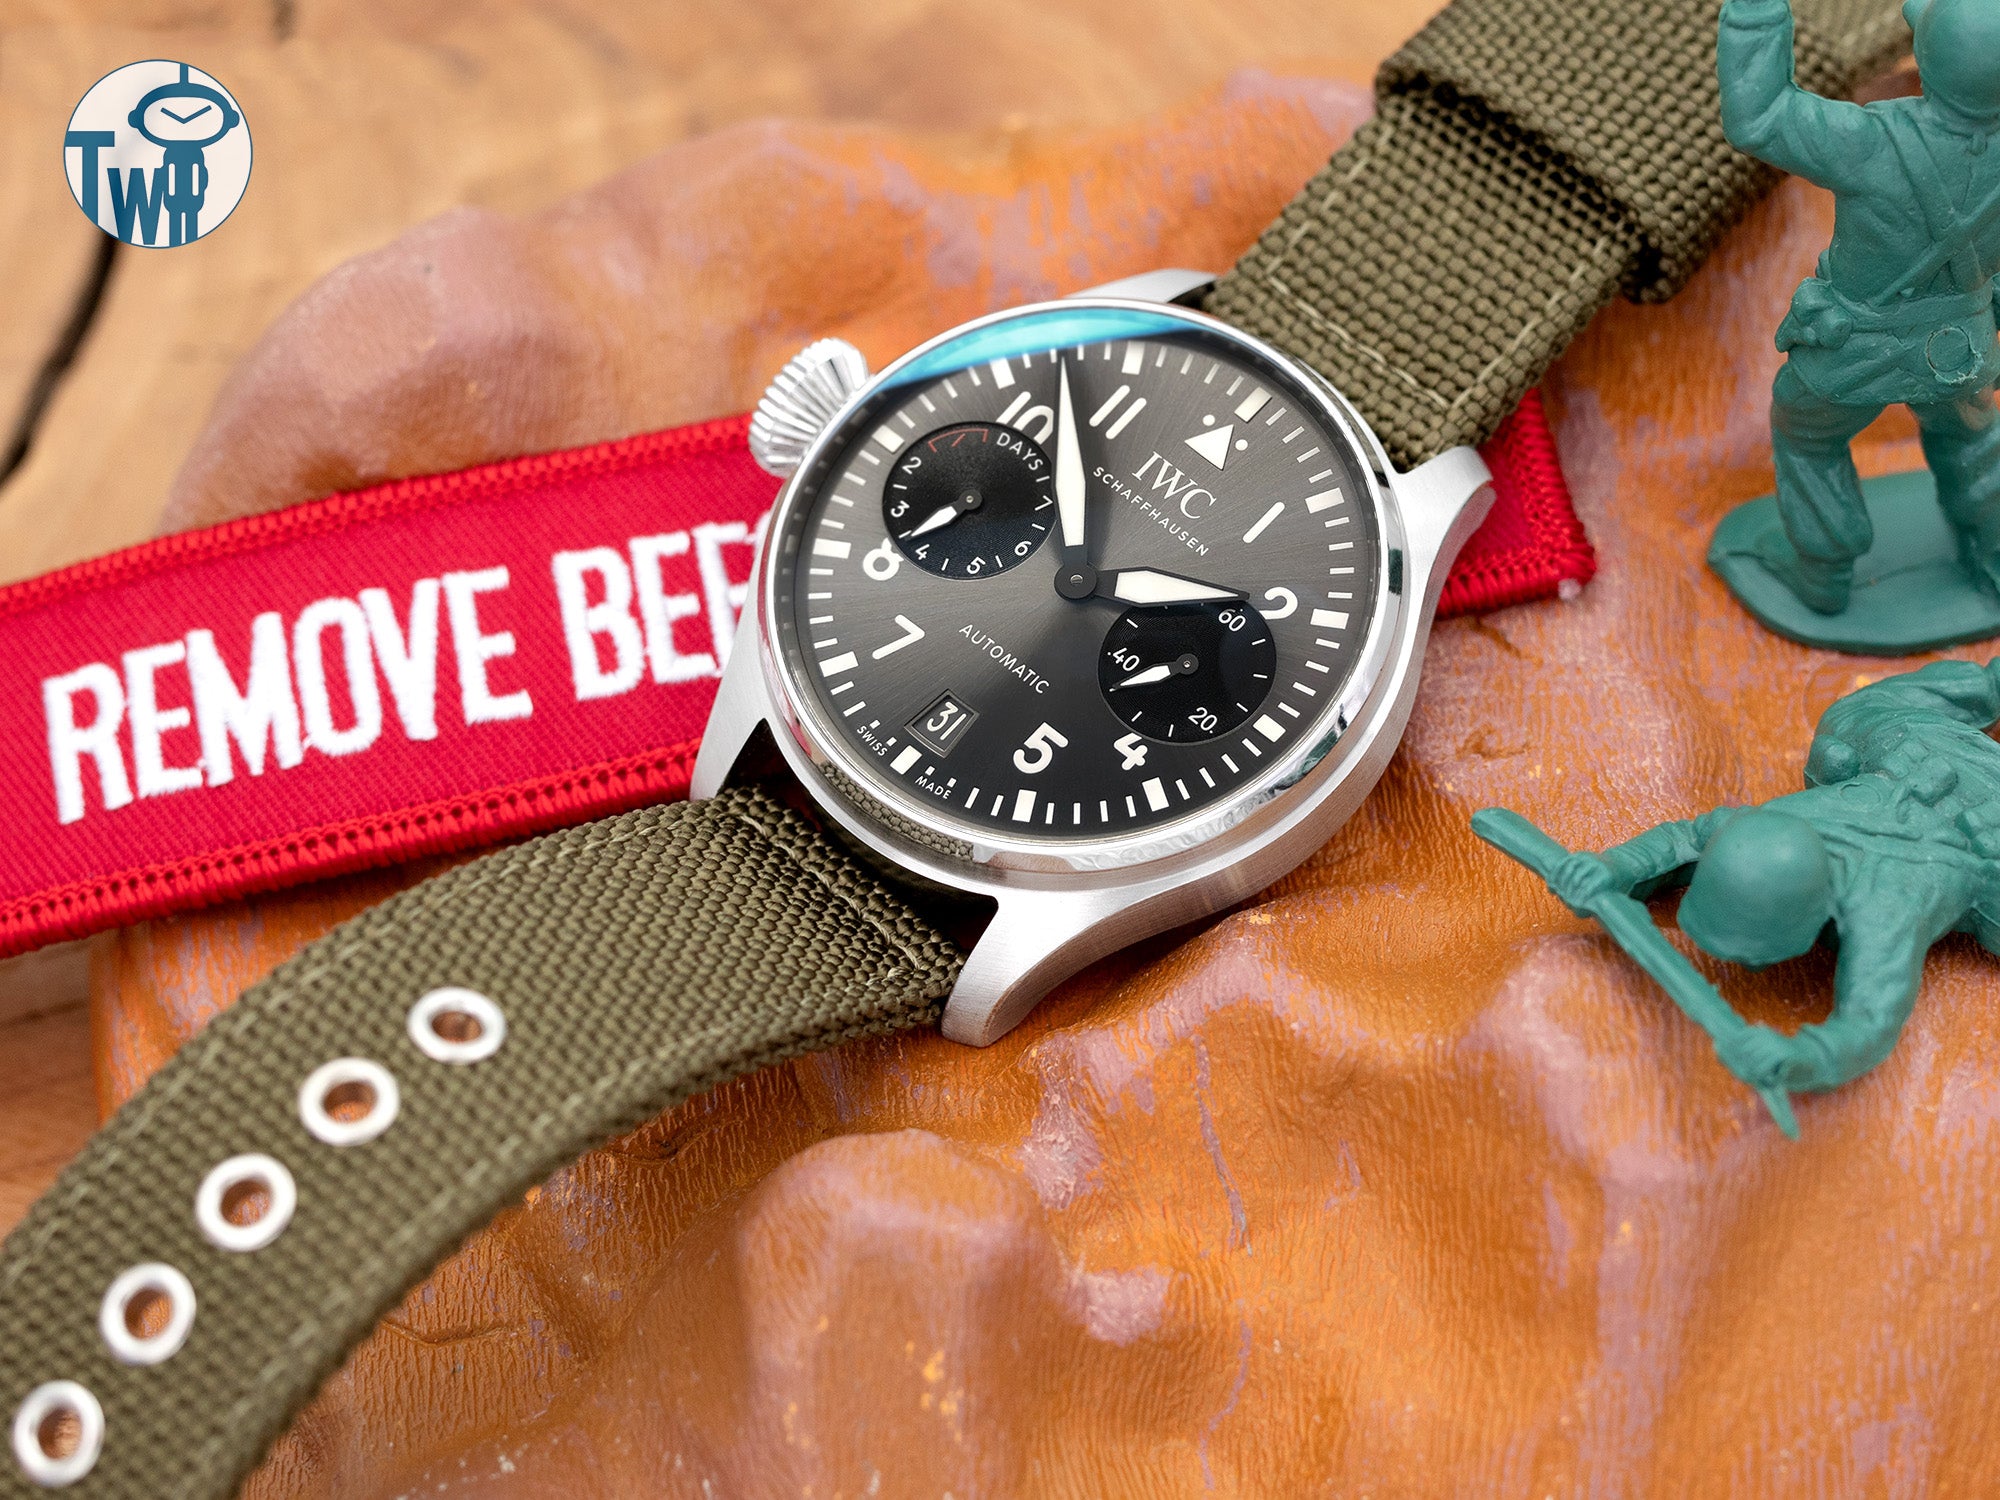 IWC萬國錶 大飛行員系列 7日鍊 腕錶 左撇子手錶搭配 太空人腕時計TW 的尼龍錶帶。